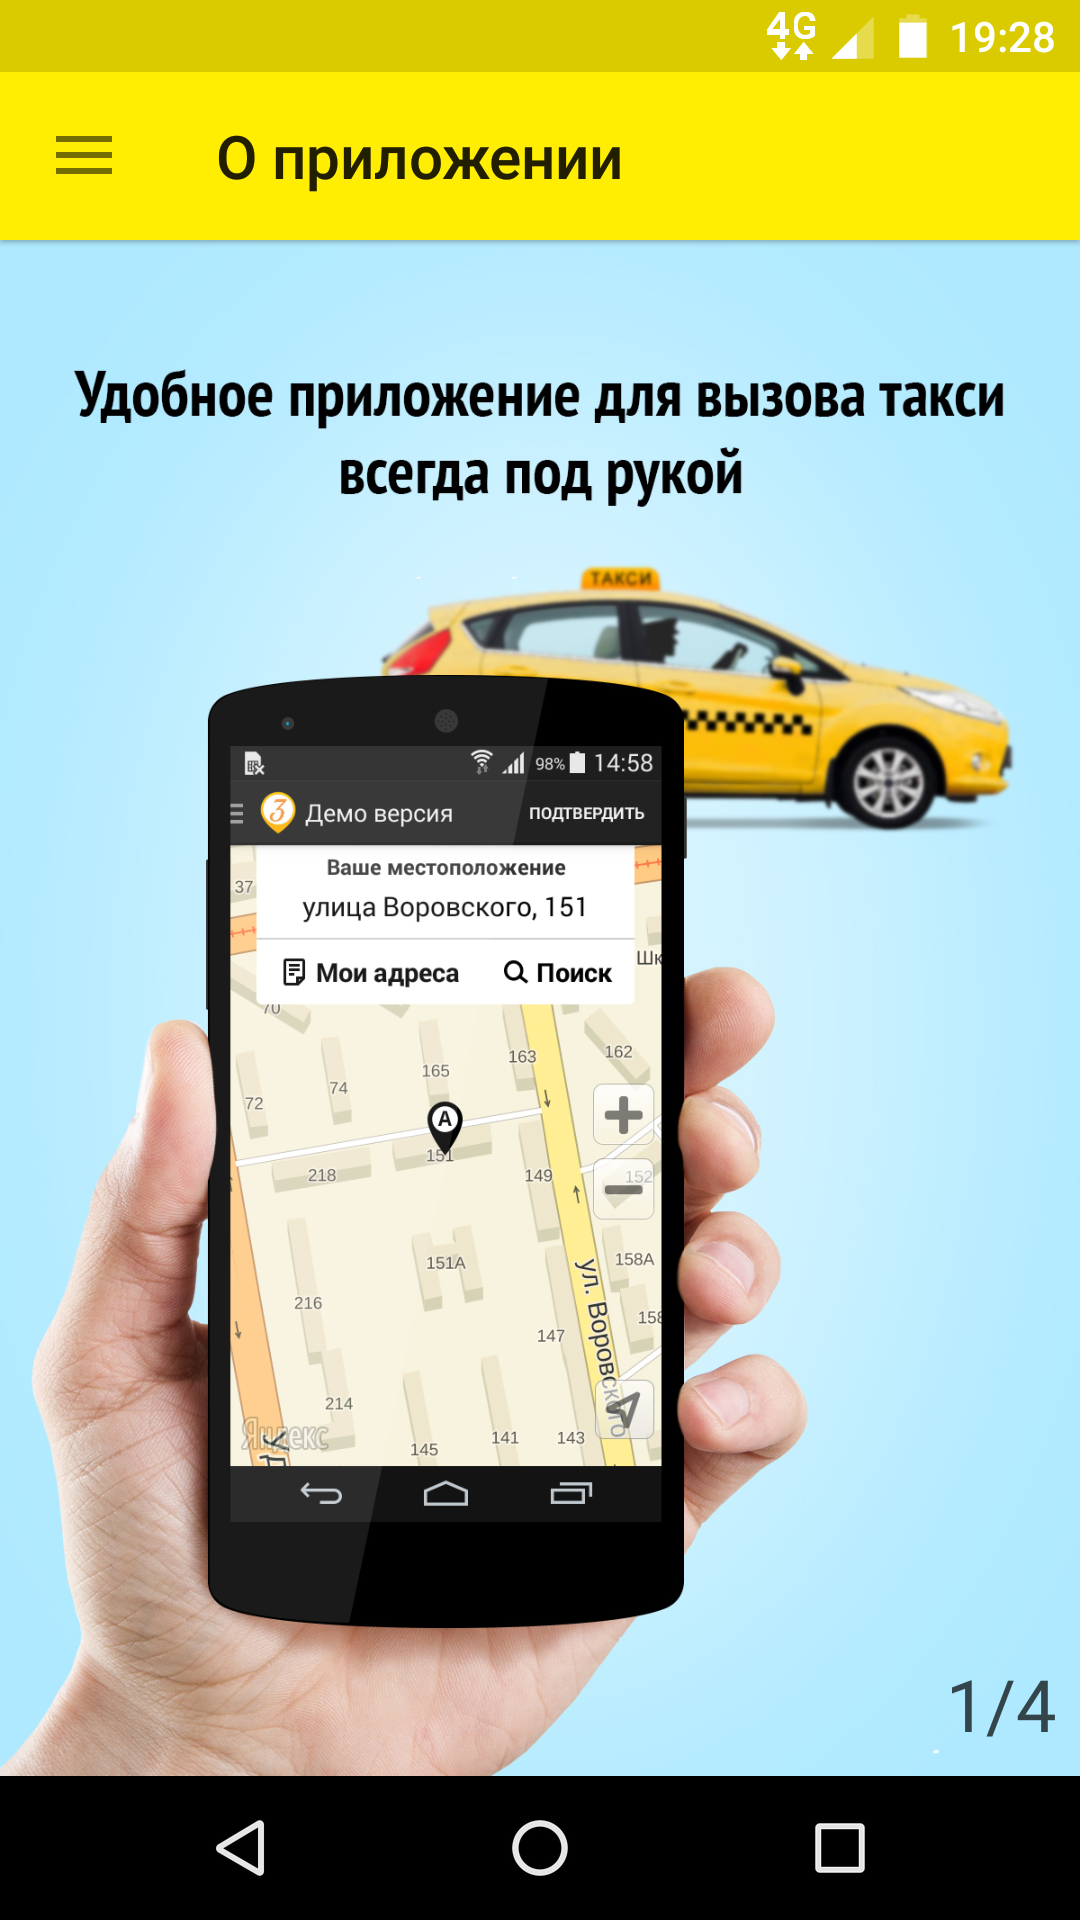 Обновить приложение такси